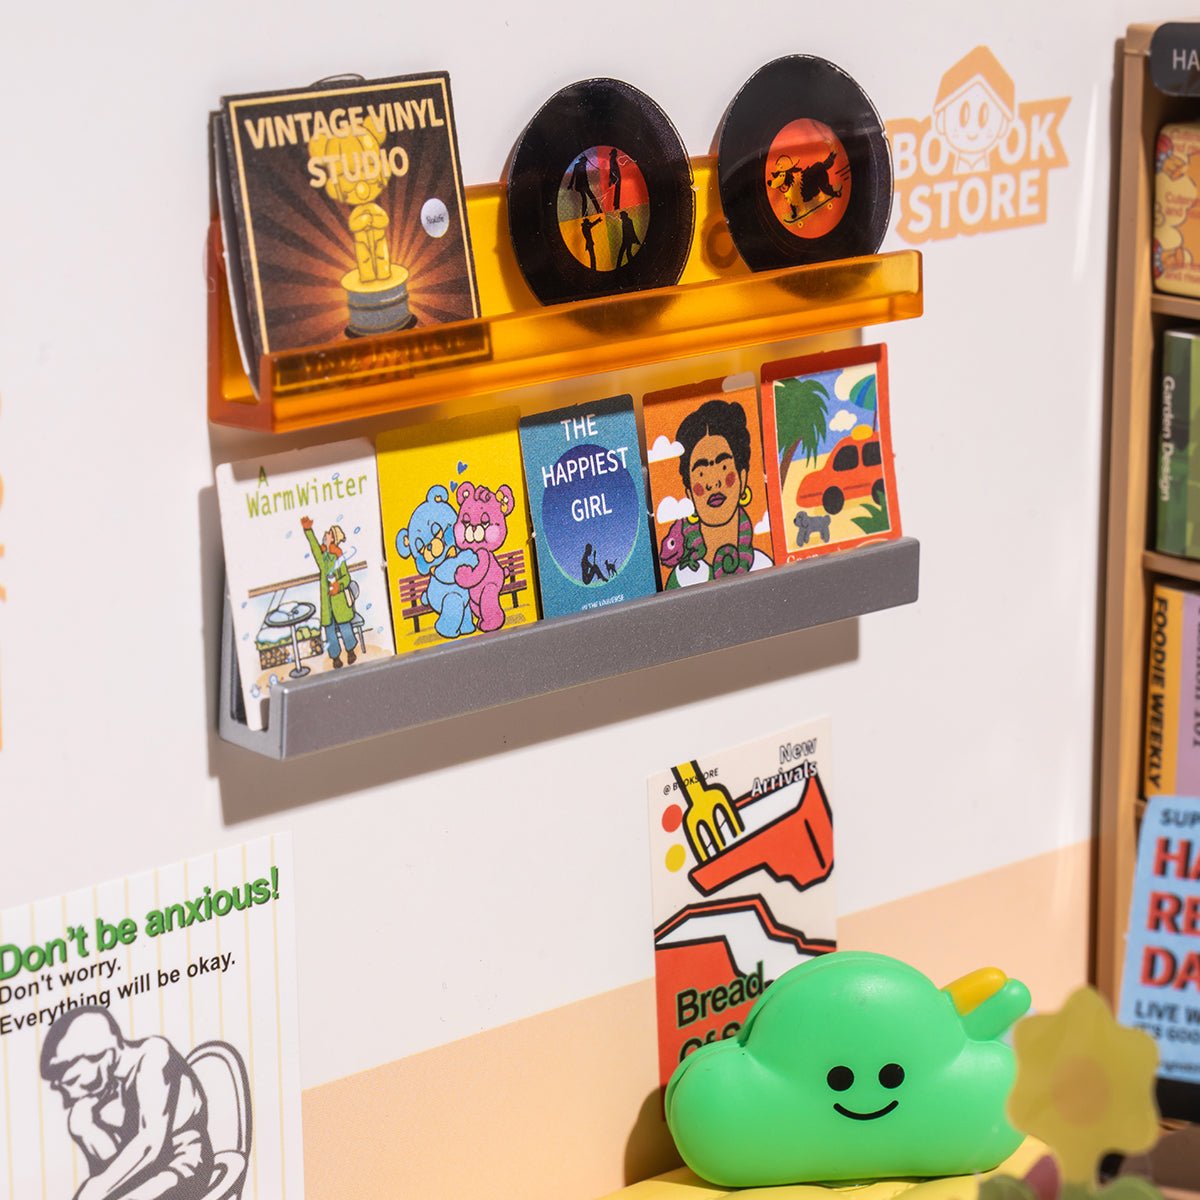 Fascinating Book Store Super Creator DIY Miniature Set - DIYative™